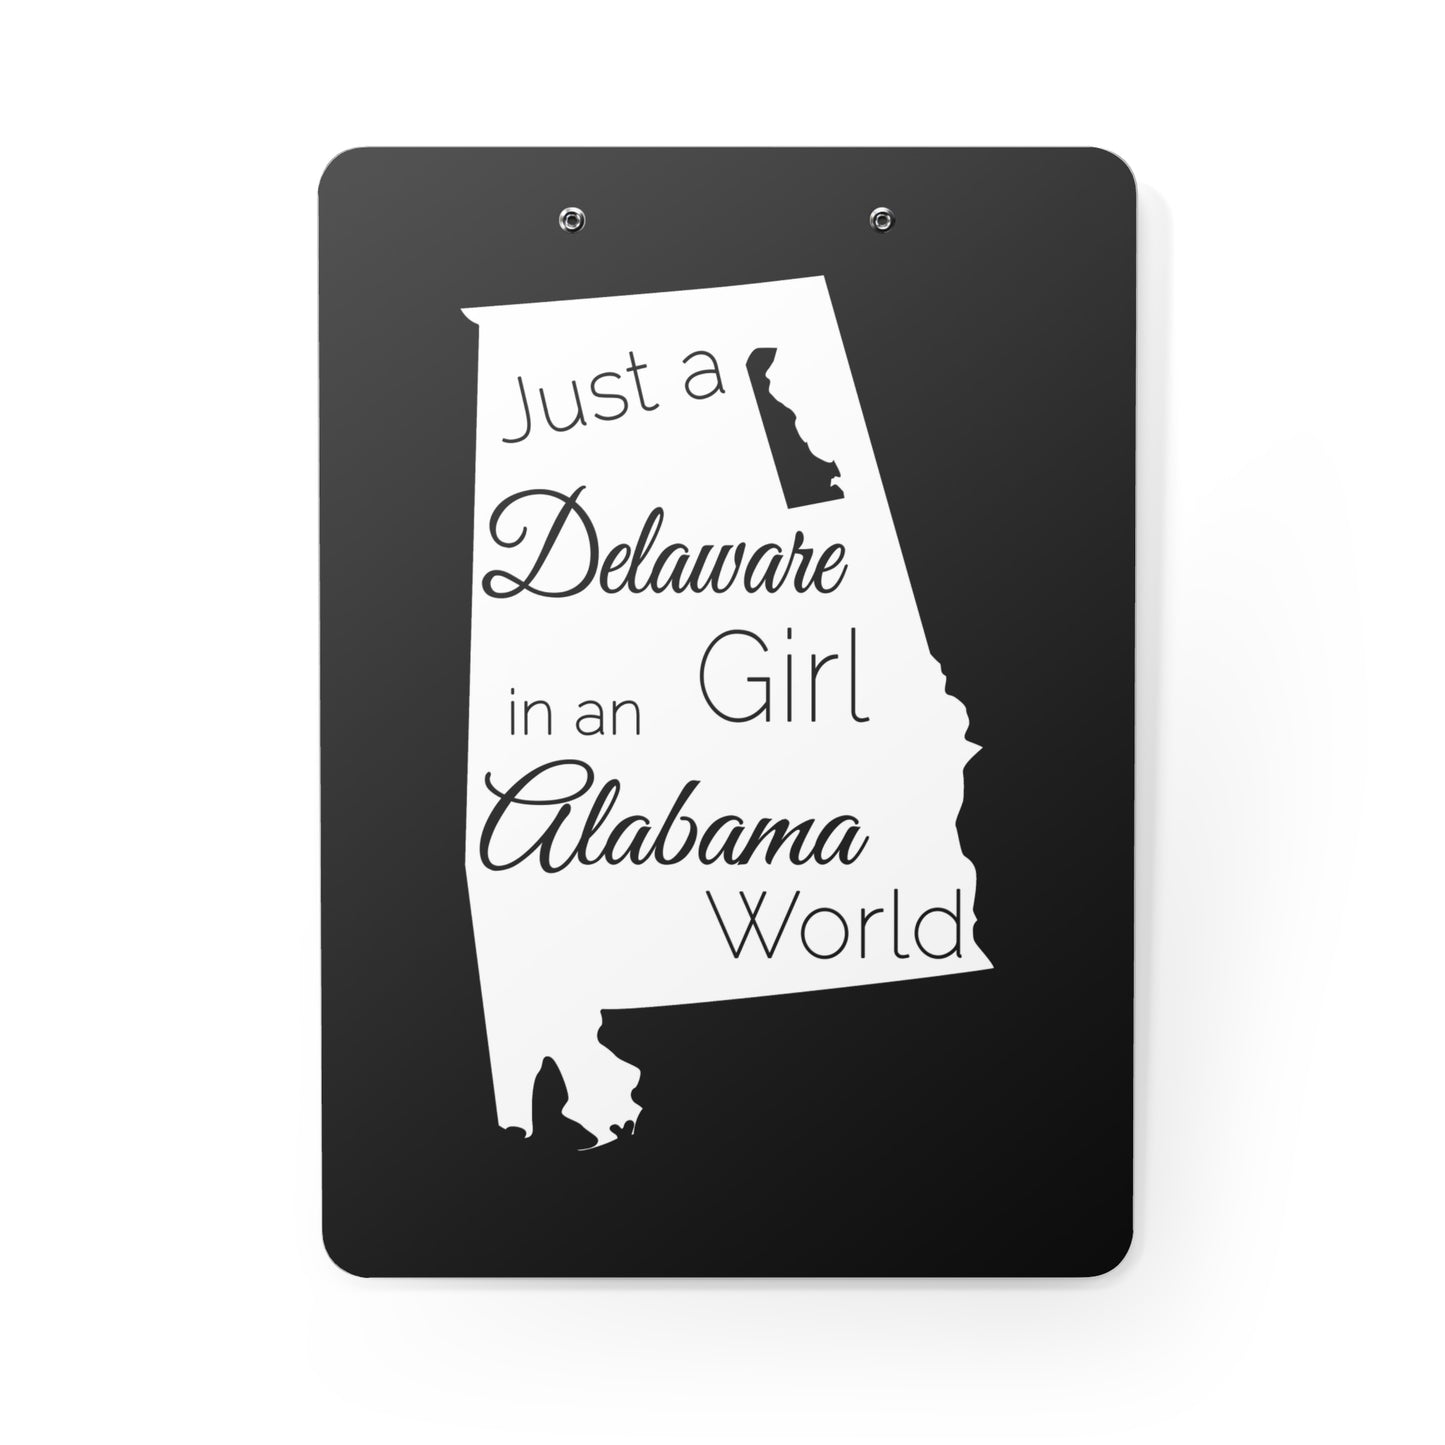 Just a Delaware Girl in an Alabama World Clipboard